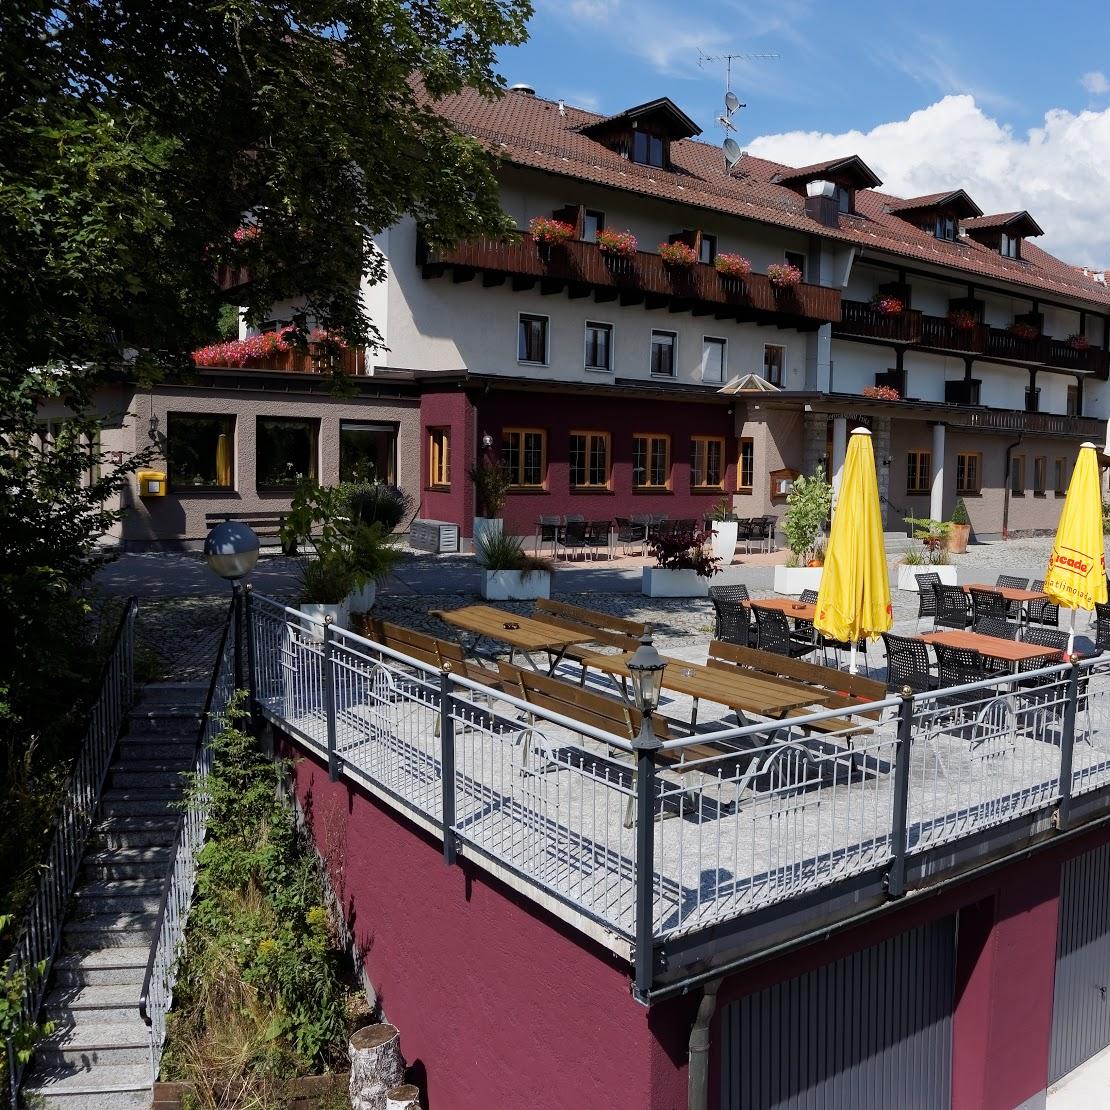 Restaurant "Hotel Fritz - Das Hotel der Bäume" in  Drachselsried